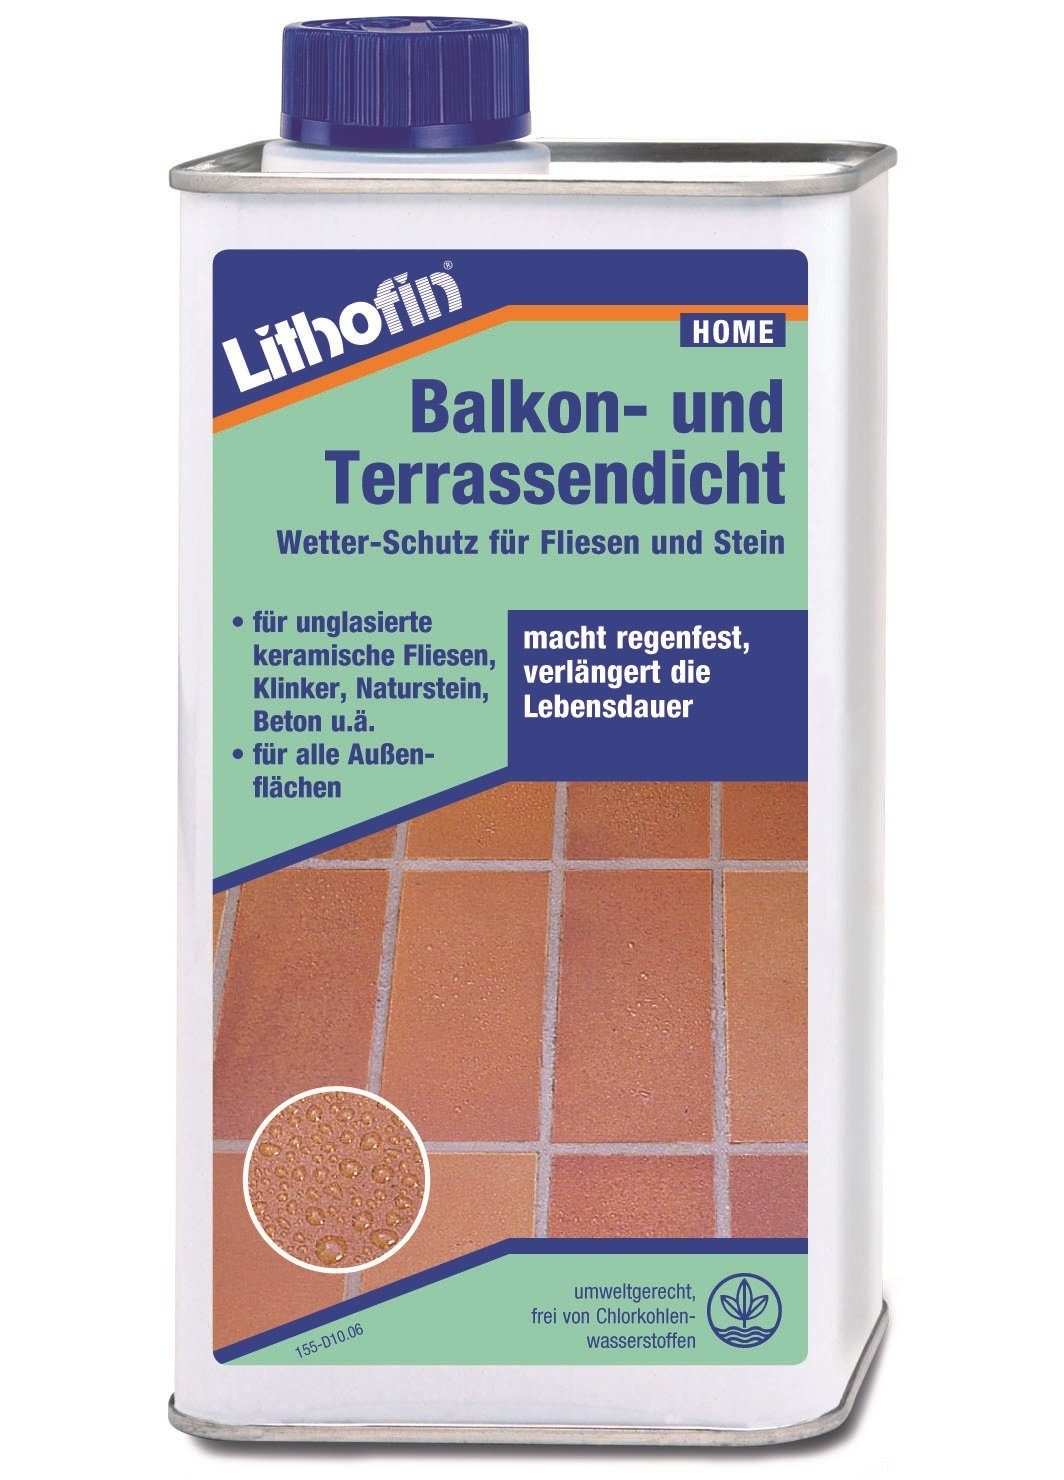 Lithofin LITHOFIN Balkon- und Terassendicht 1 Ltr Naturstein-Reiniger